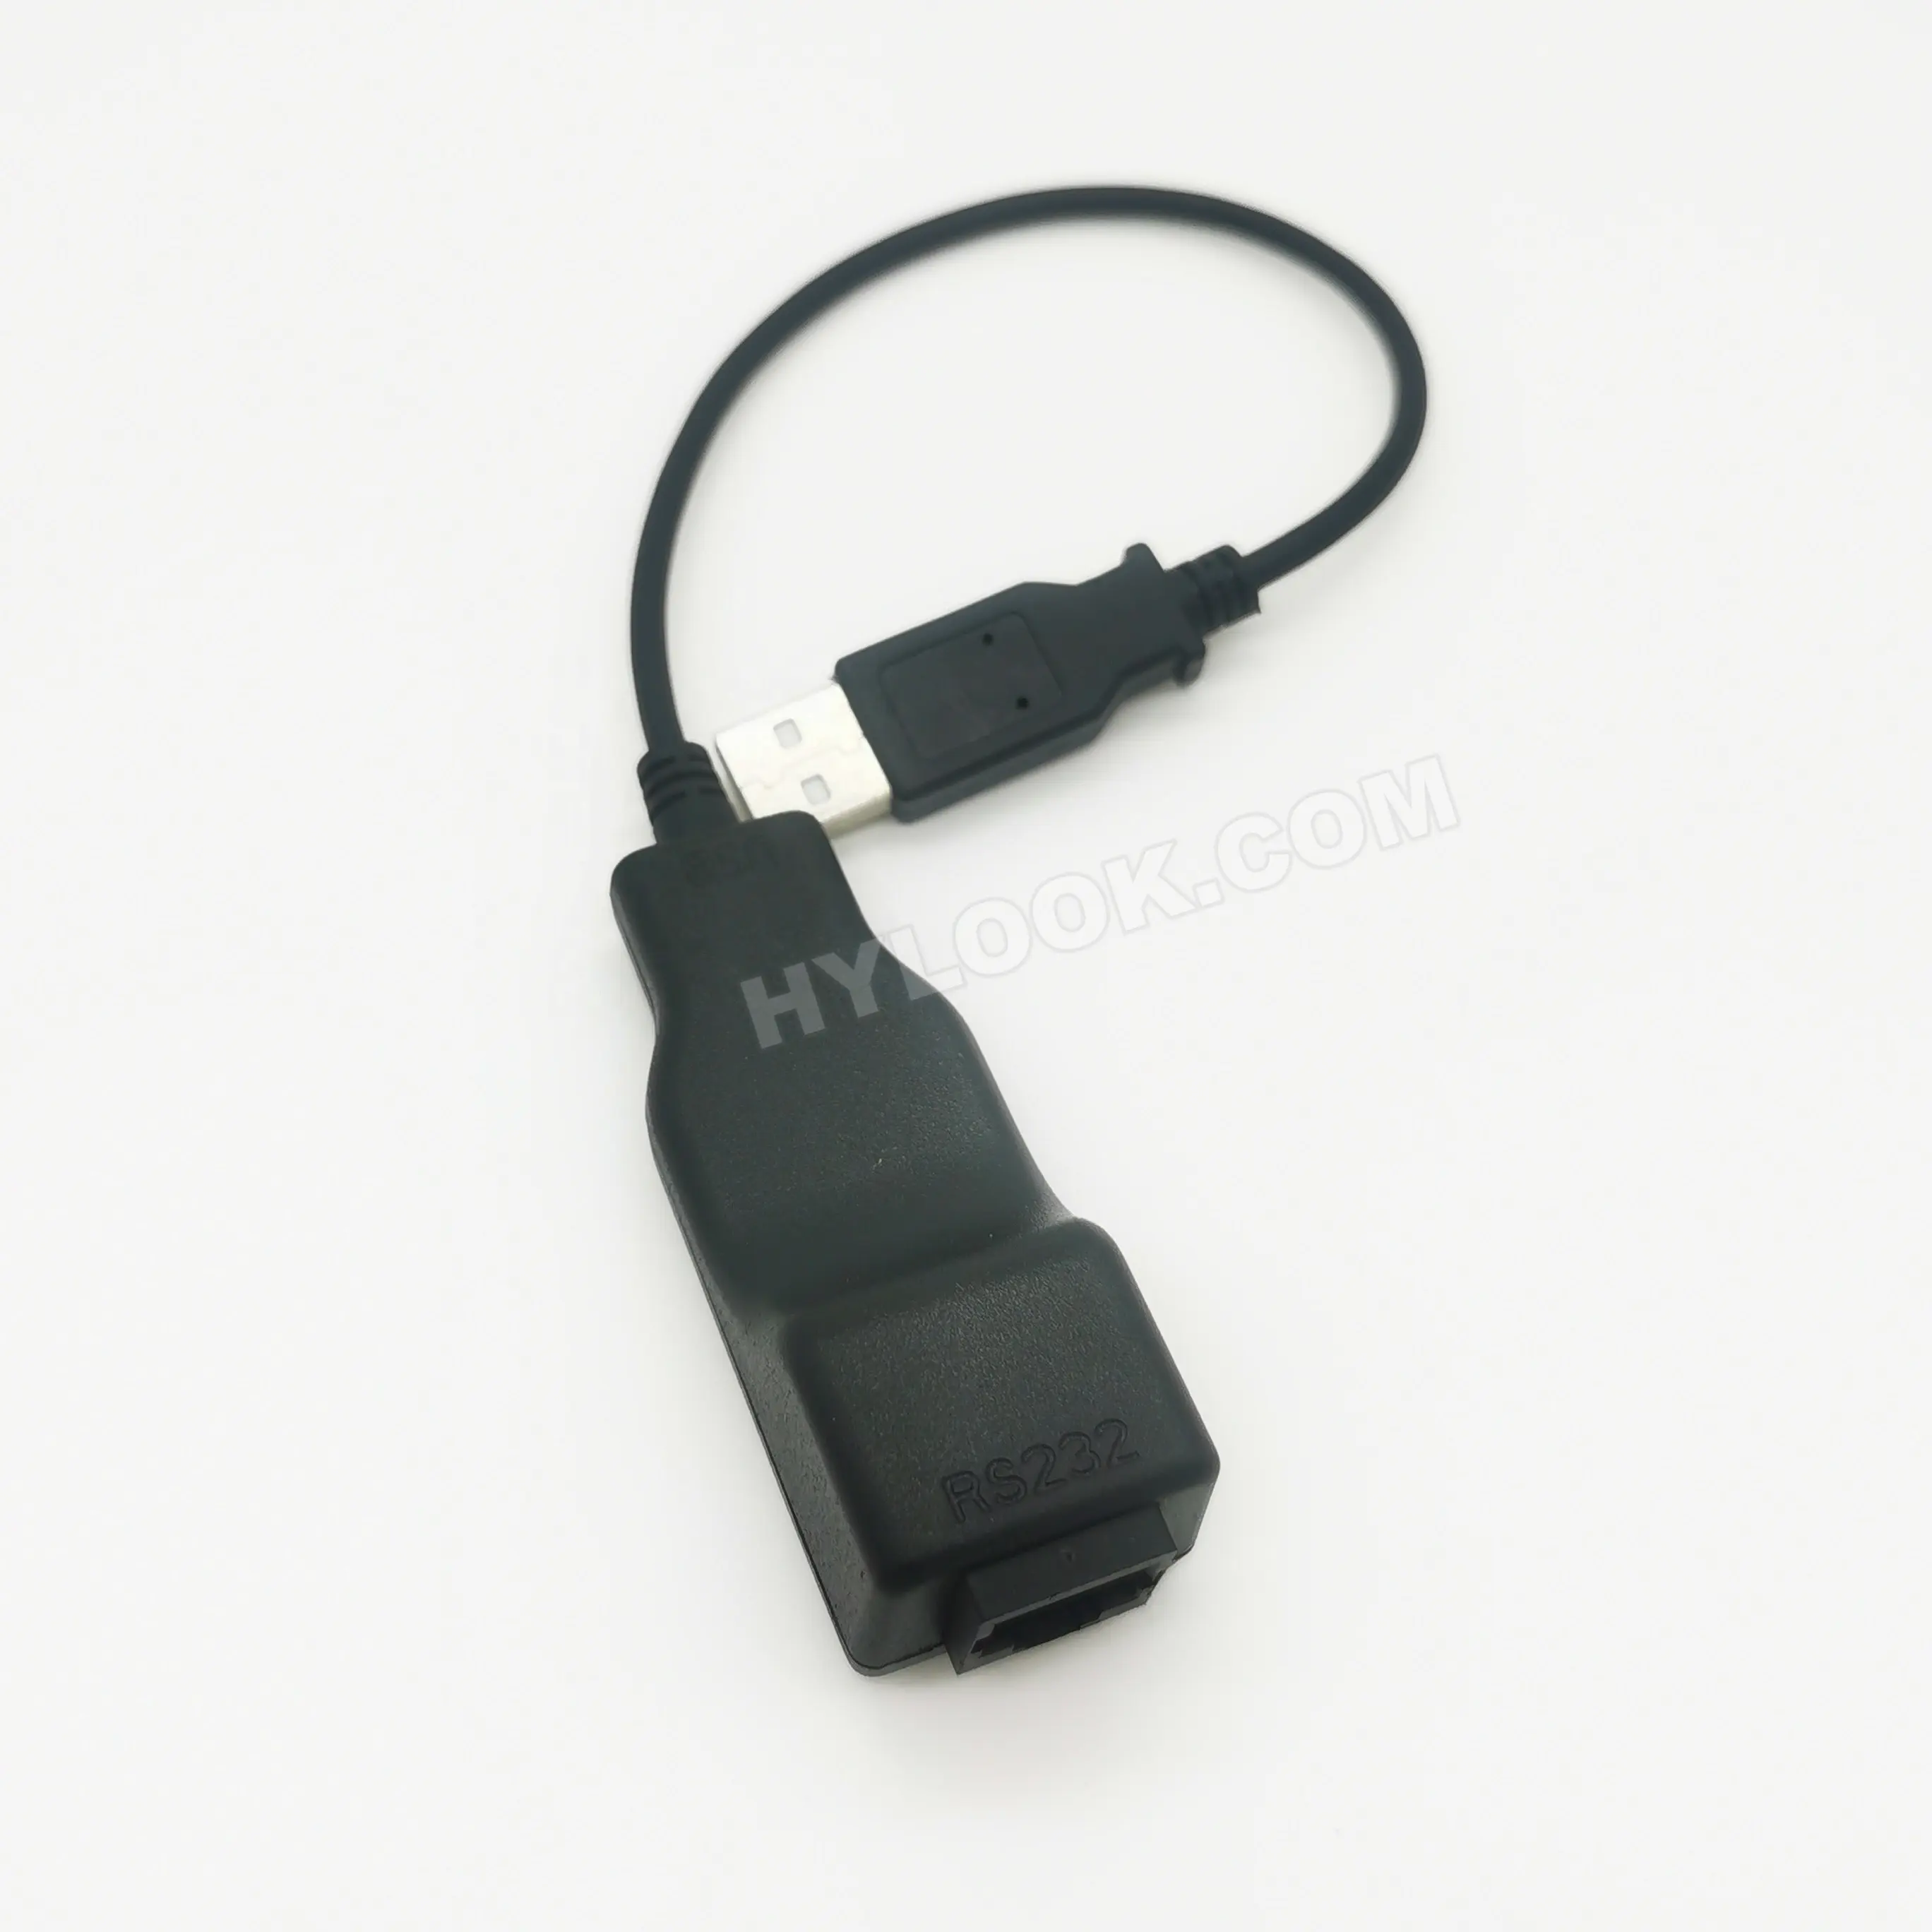 Cavo convertitore USB RS232 per Verifone Vx520 08798-02-R